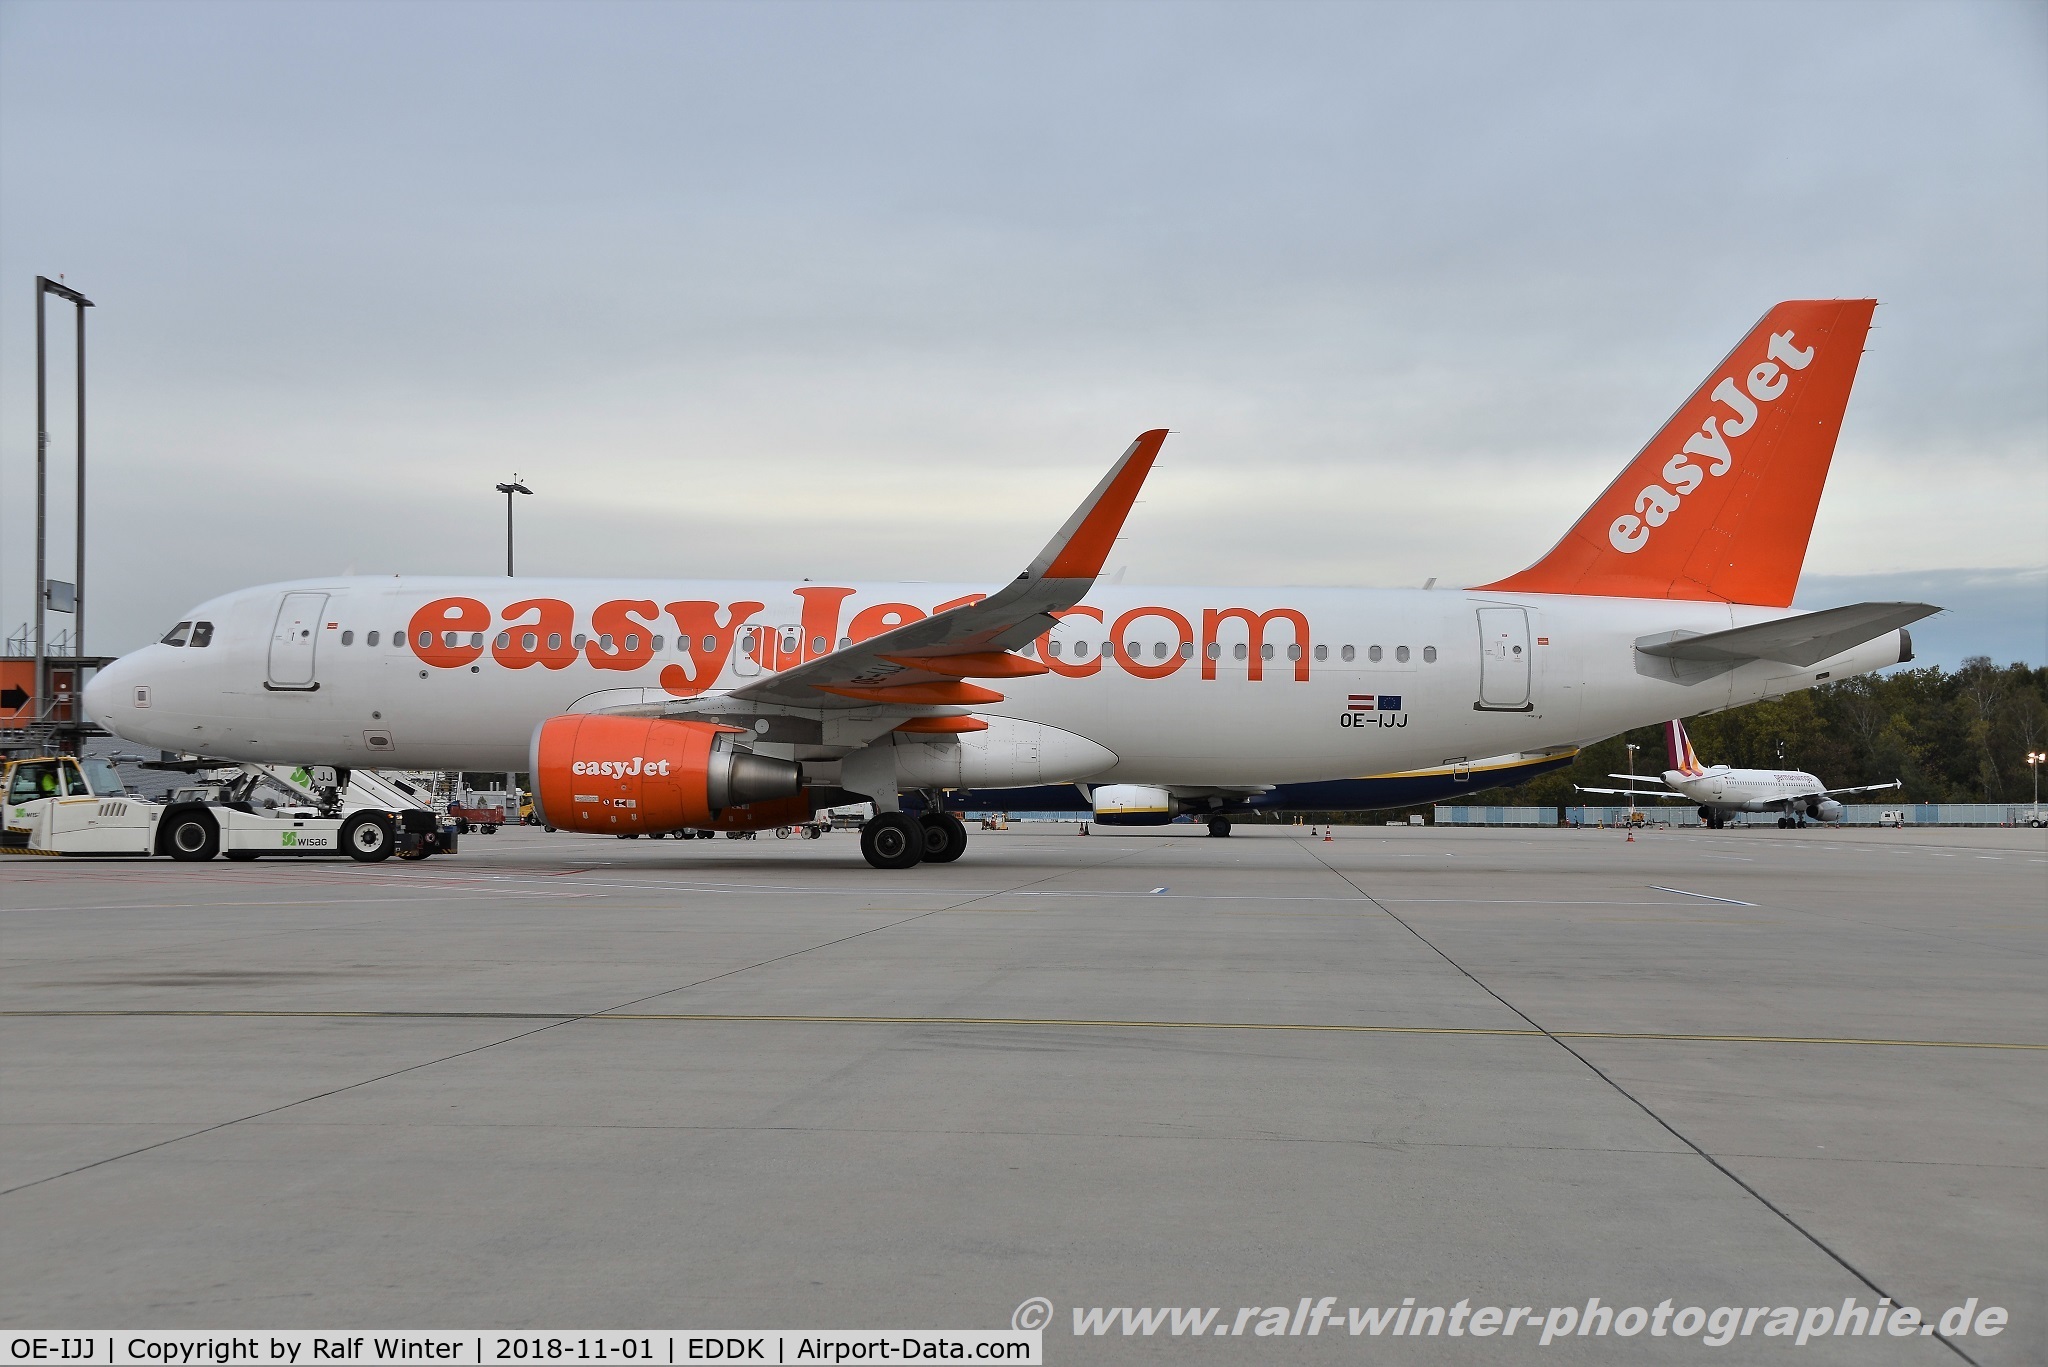 OE-IJJ, 2015 Airbus A320-214 C/N 6546, Airbus A320-214(W) - EC EJU easyJet Europe - 6546 - OE-IJJ - 01.11.2018 - CGN